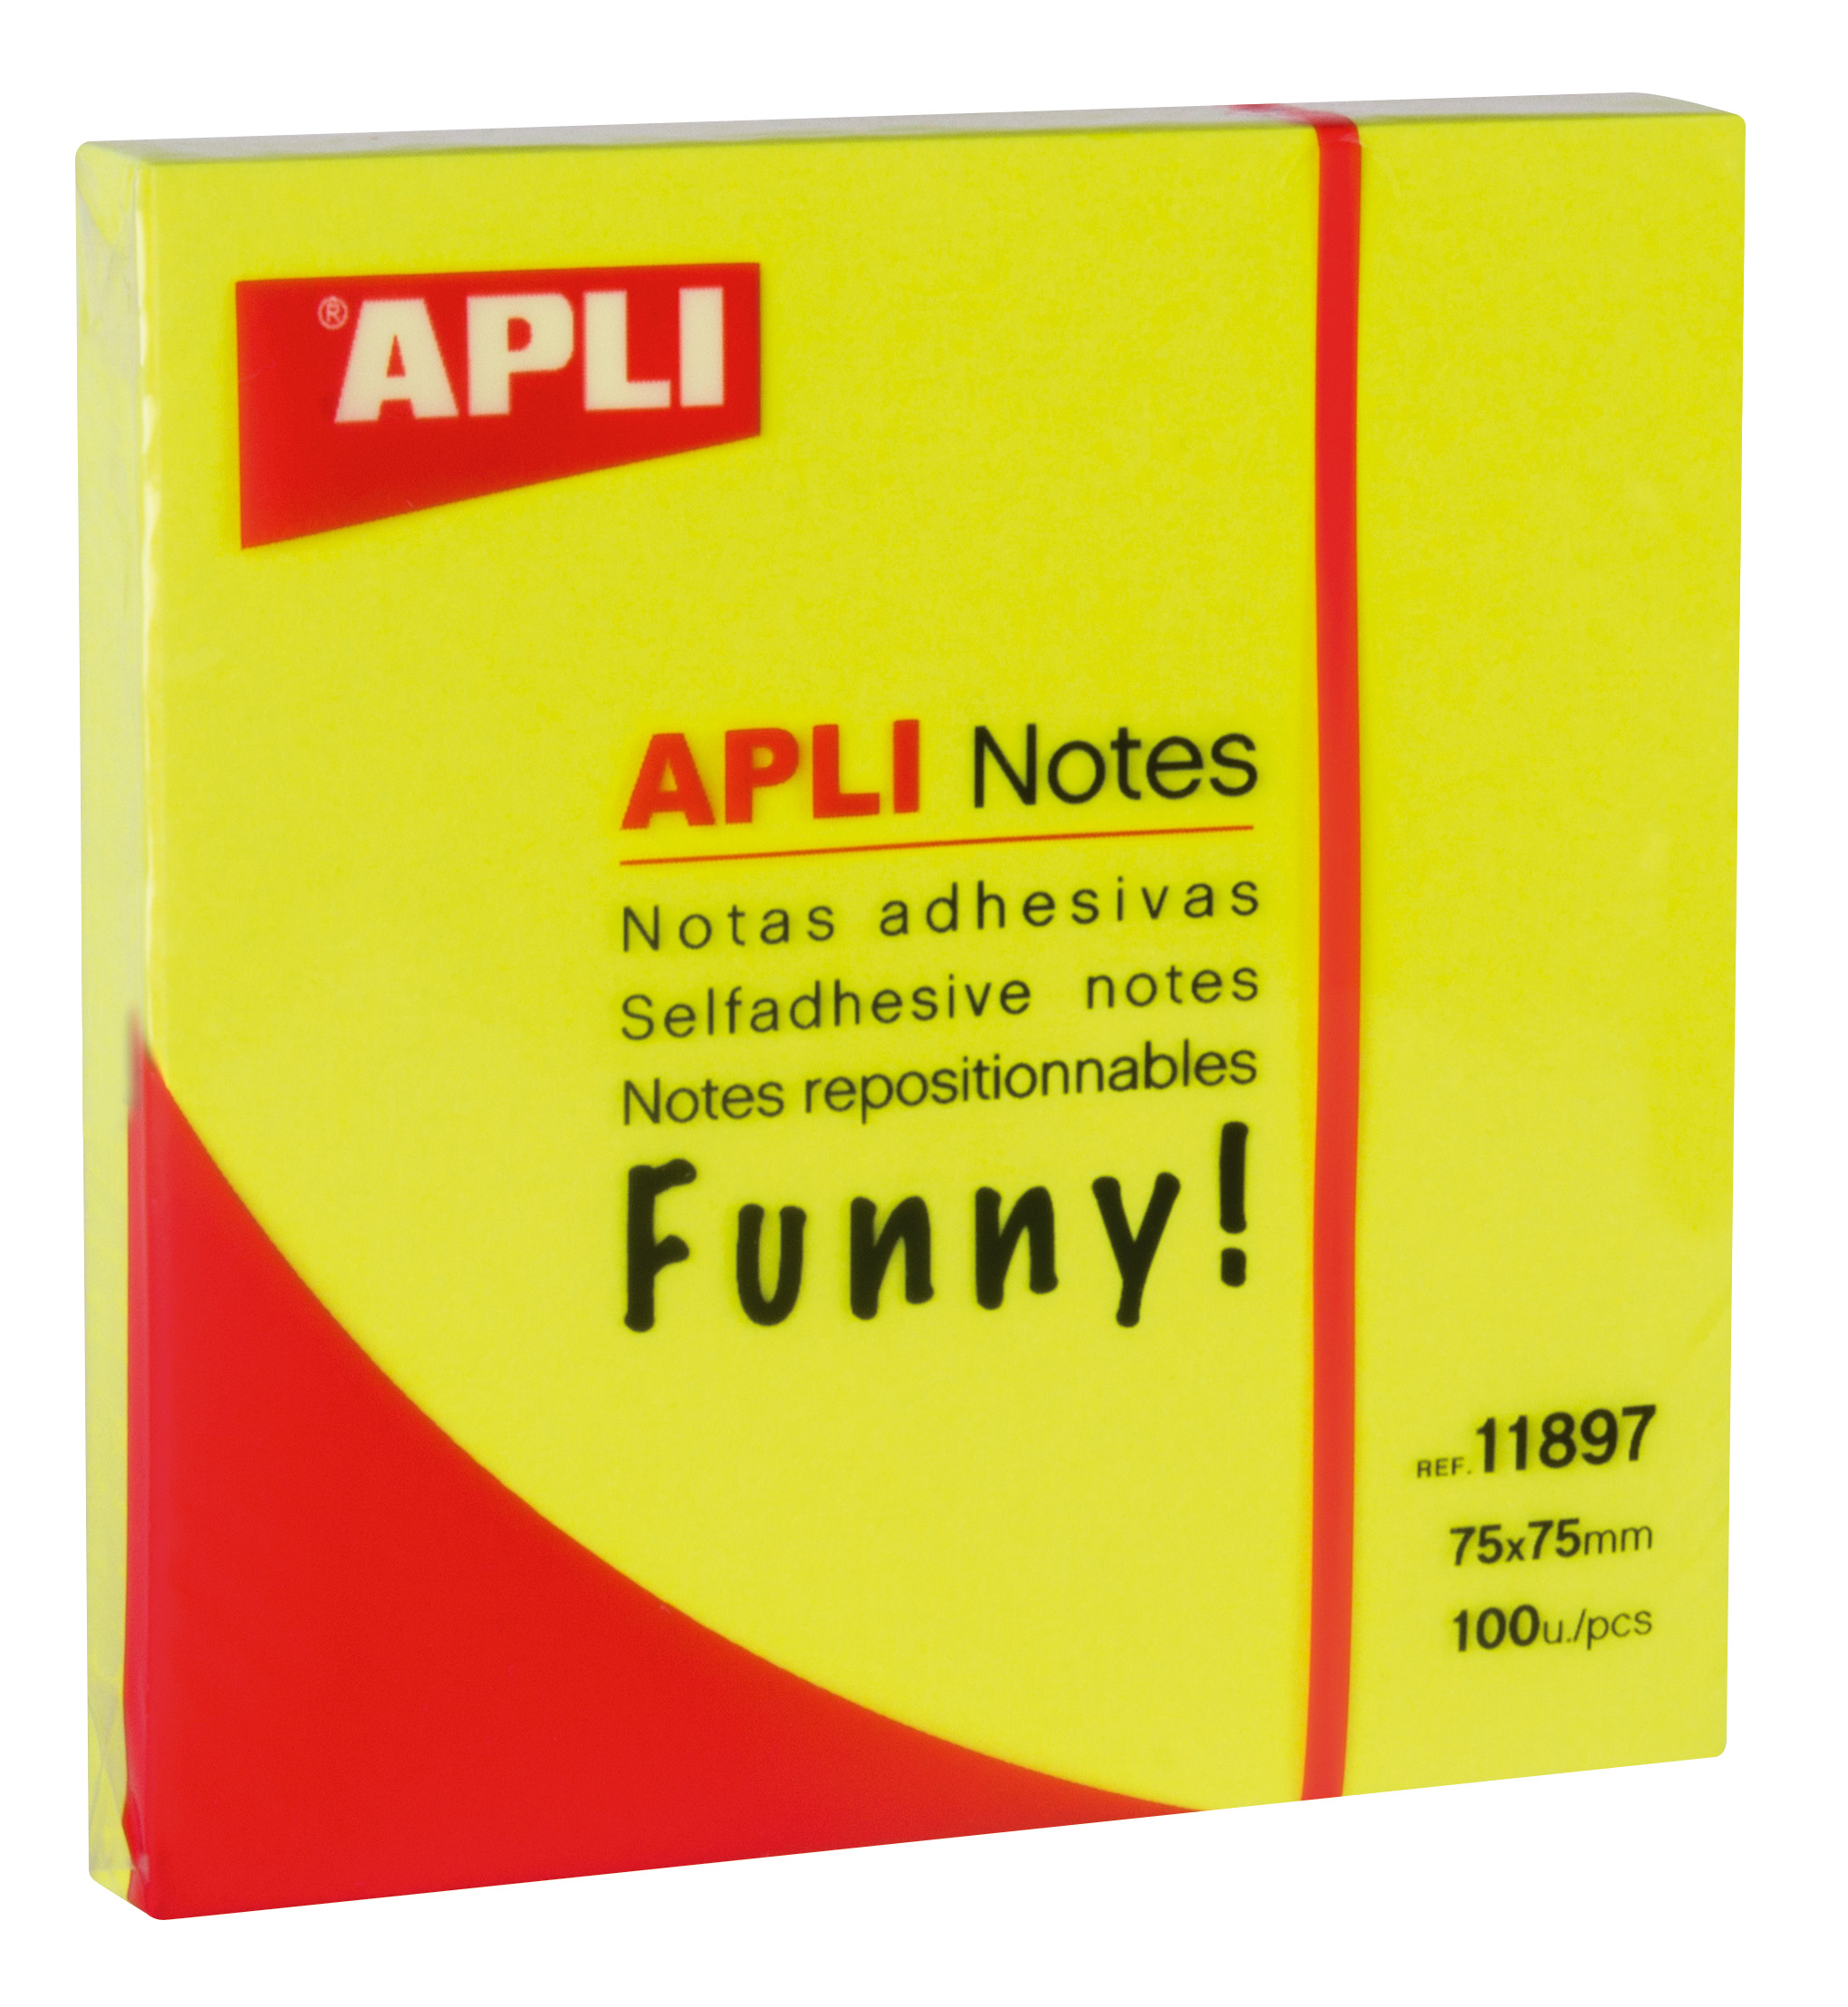 Apli Funny Sticky Notes 75x75mm - Bloc de 100 feuilles - Adhésif de qualité - Facile à décoller - Couleur jaune fluo